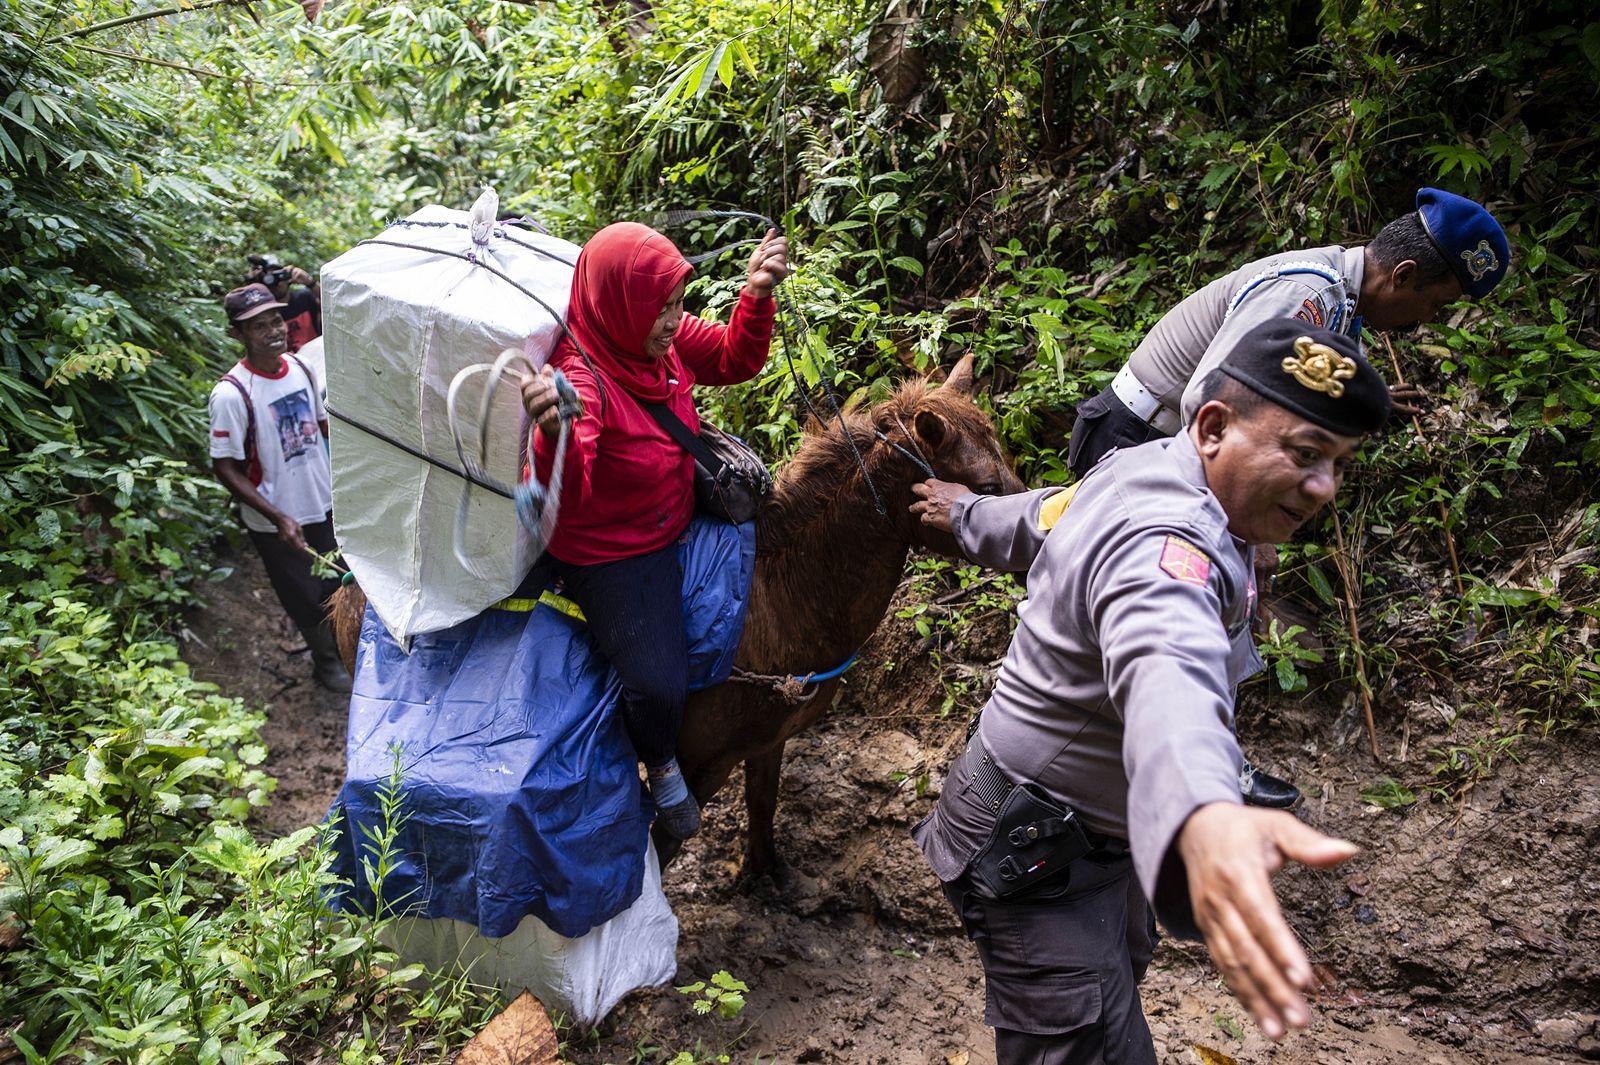 AFP-ตำรวจช่วยเจ้าหน้าที่ กกต.ขนบัตรเลือกตั้งด้วยการขี่ม้าขึ้นเขาไปยังหมู่บ้านเจมเบอร์ จ.ชวาตะวันออกของอินโดนีเซีย.jpg